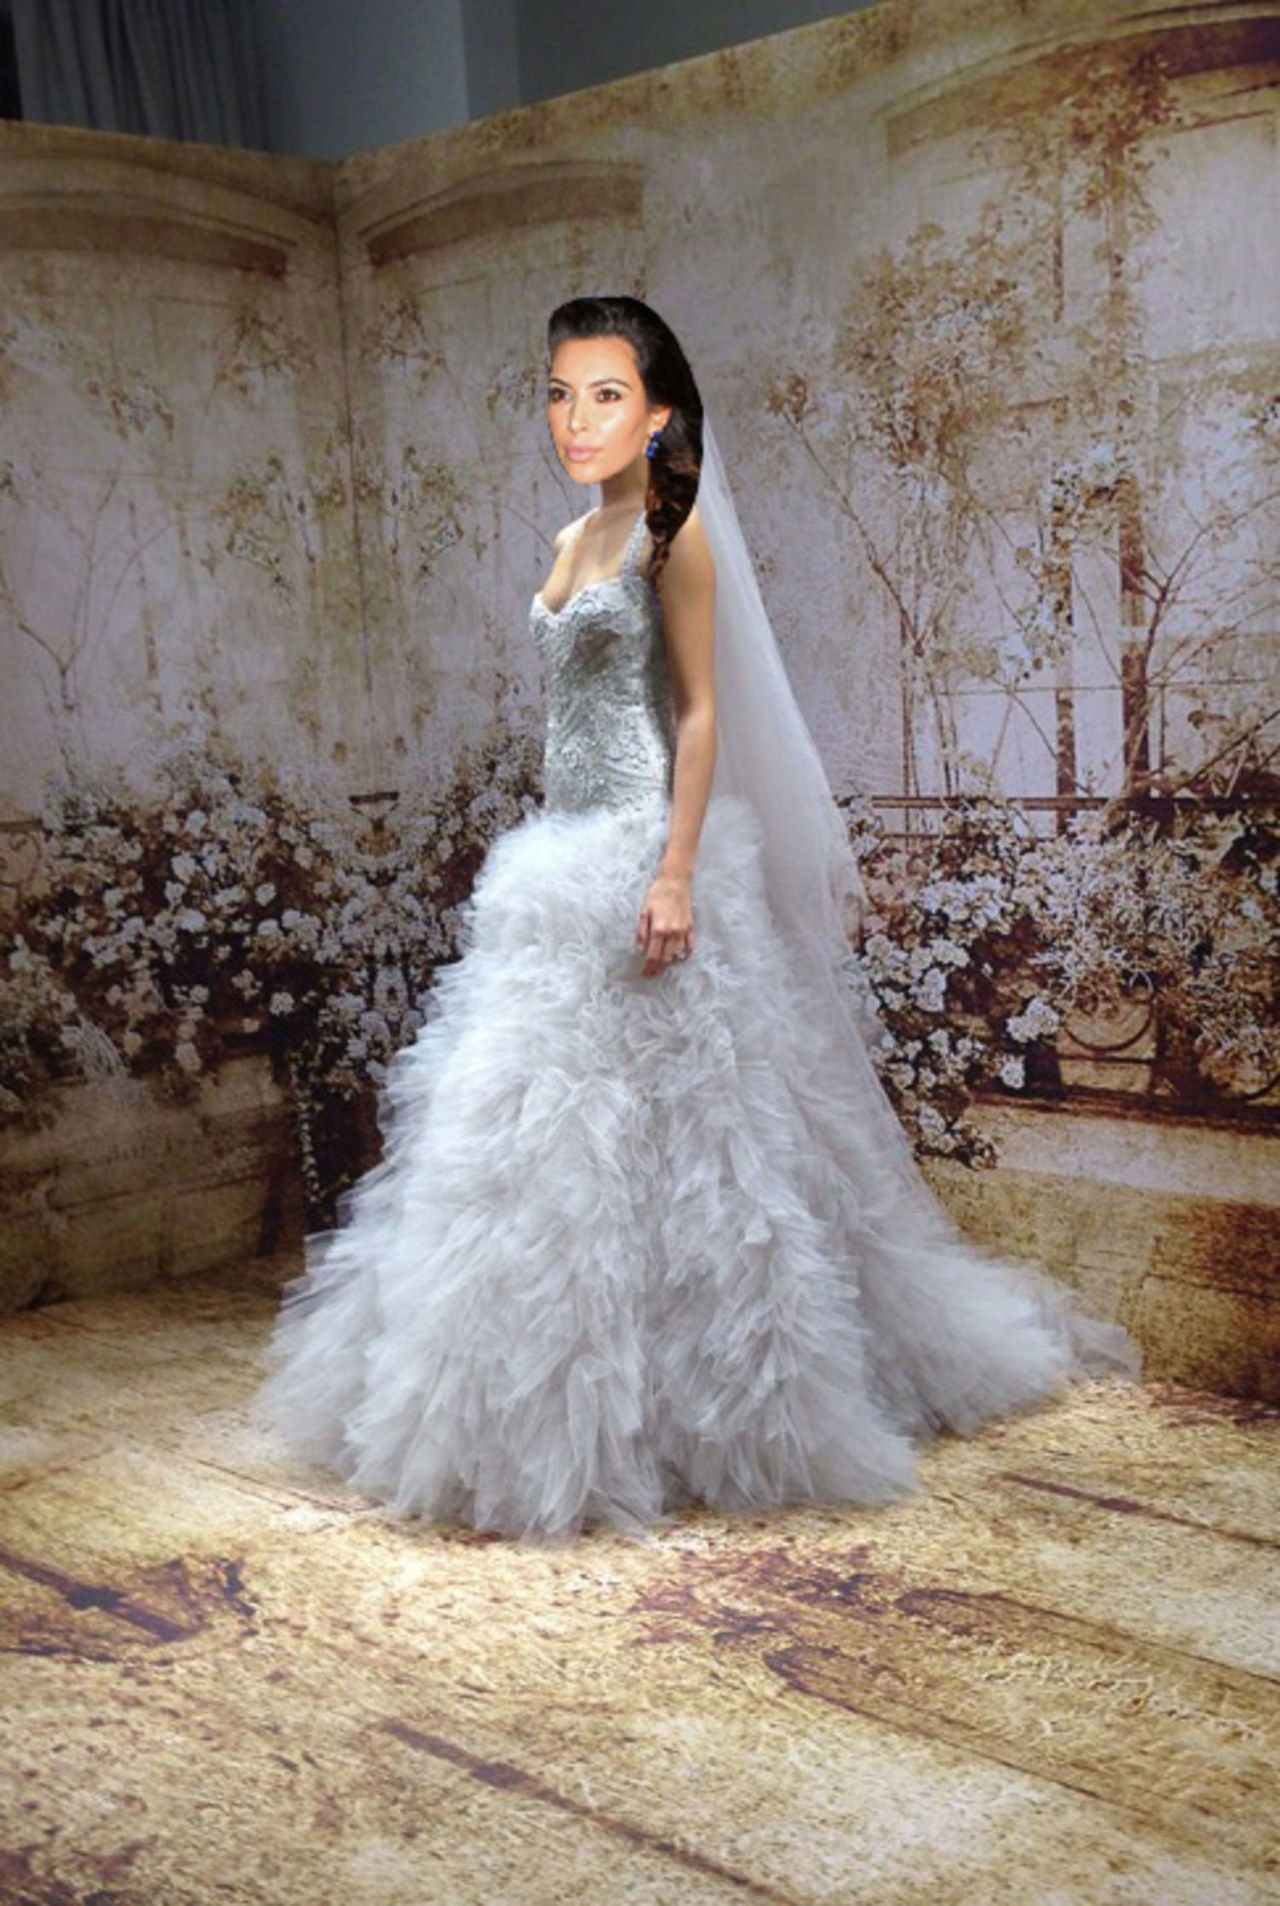 6 kim kardashian wedding dress kanye west wedding gown celebrity weddings 1022